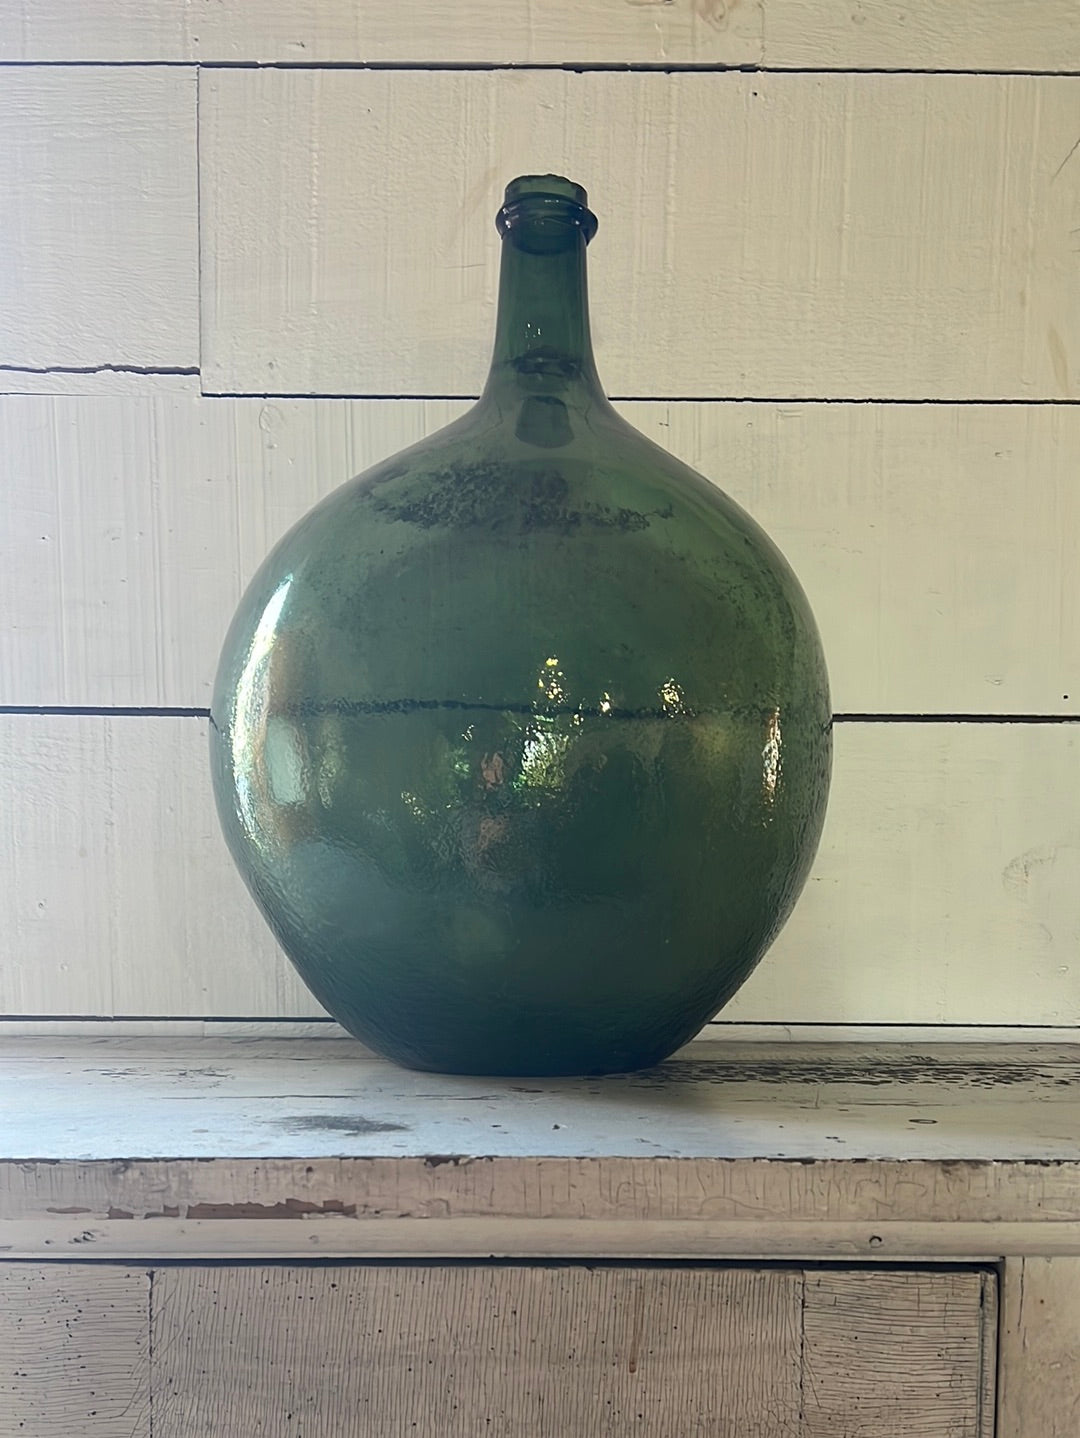 Vintage Glass Bottleneck Jug - Green